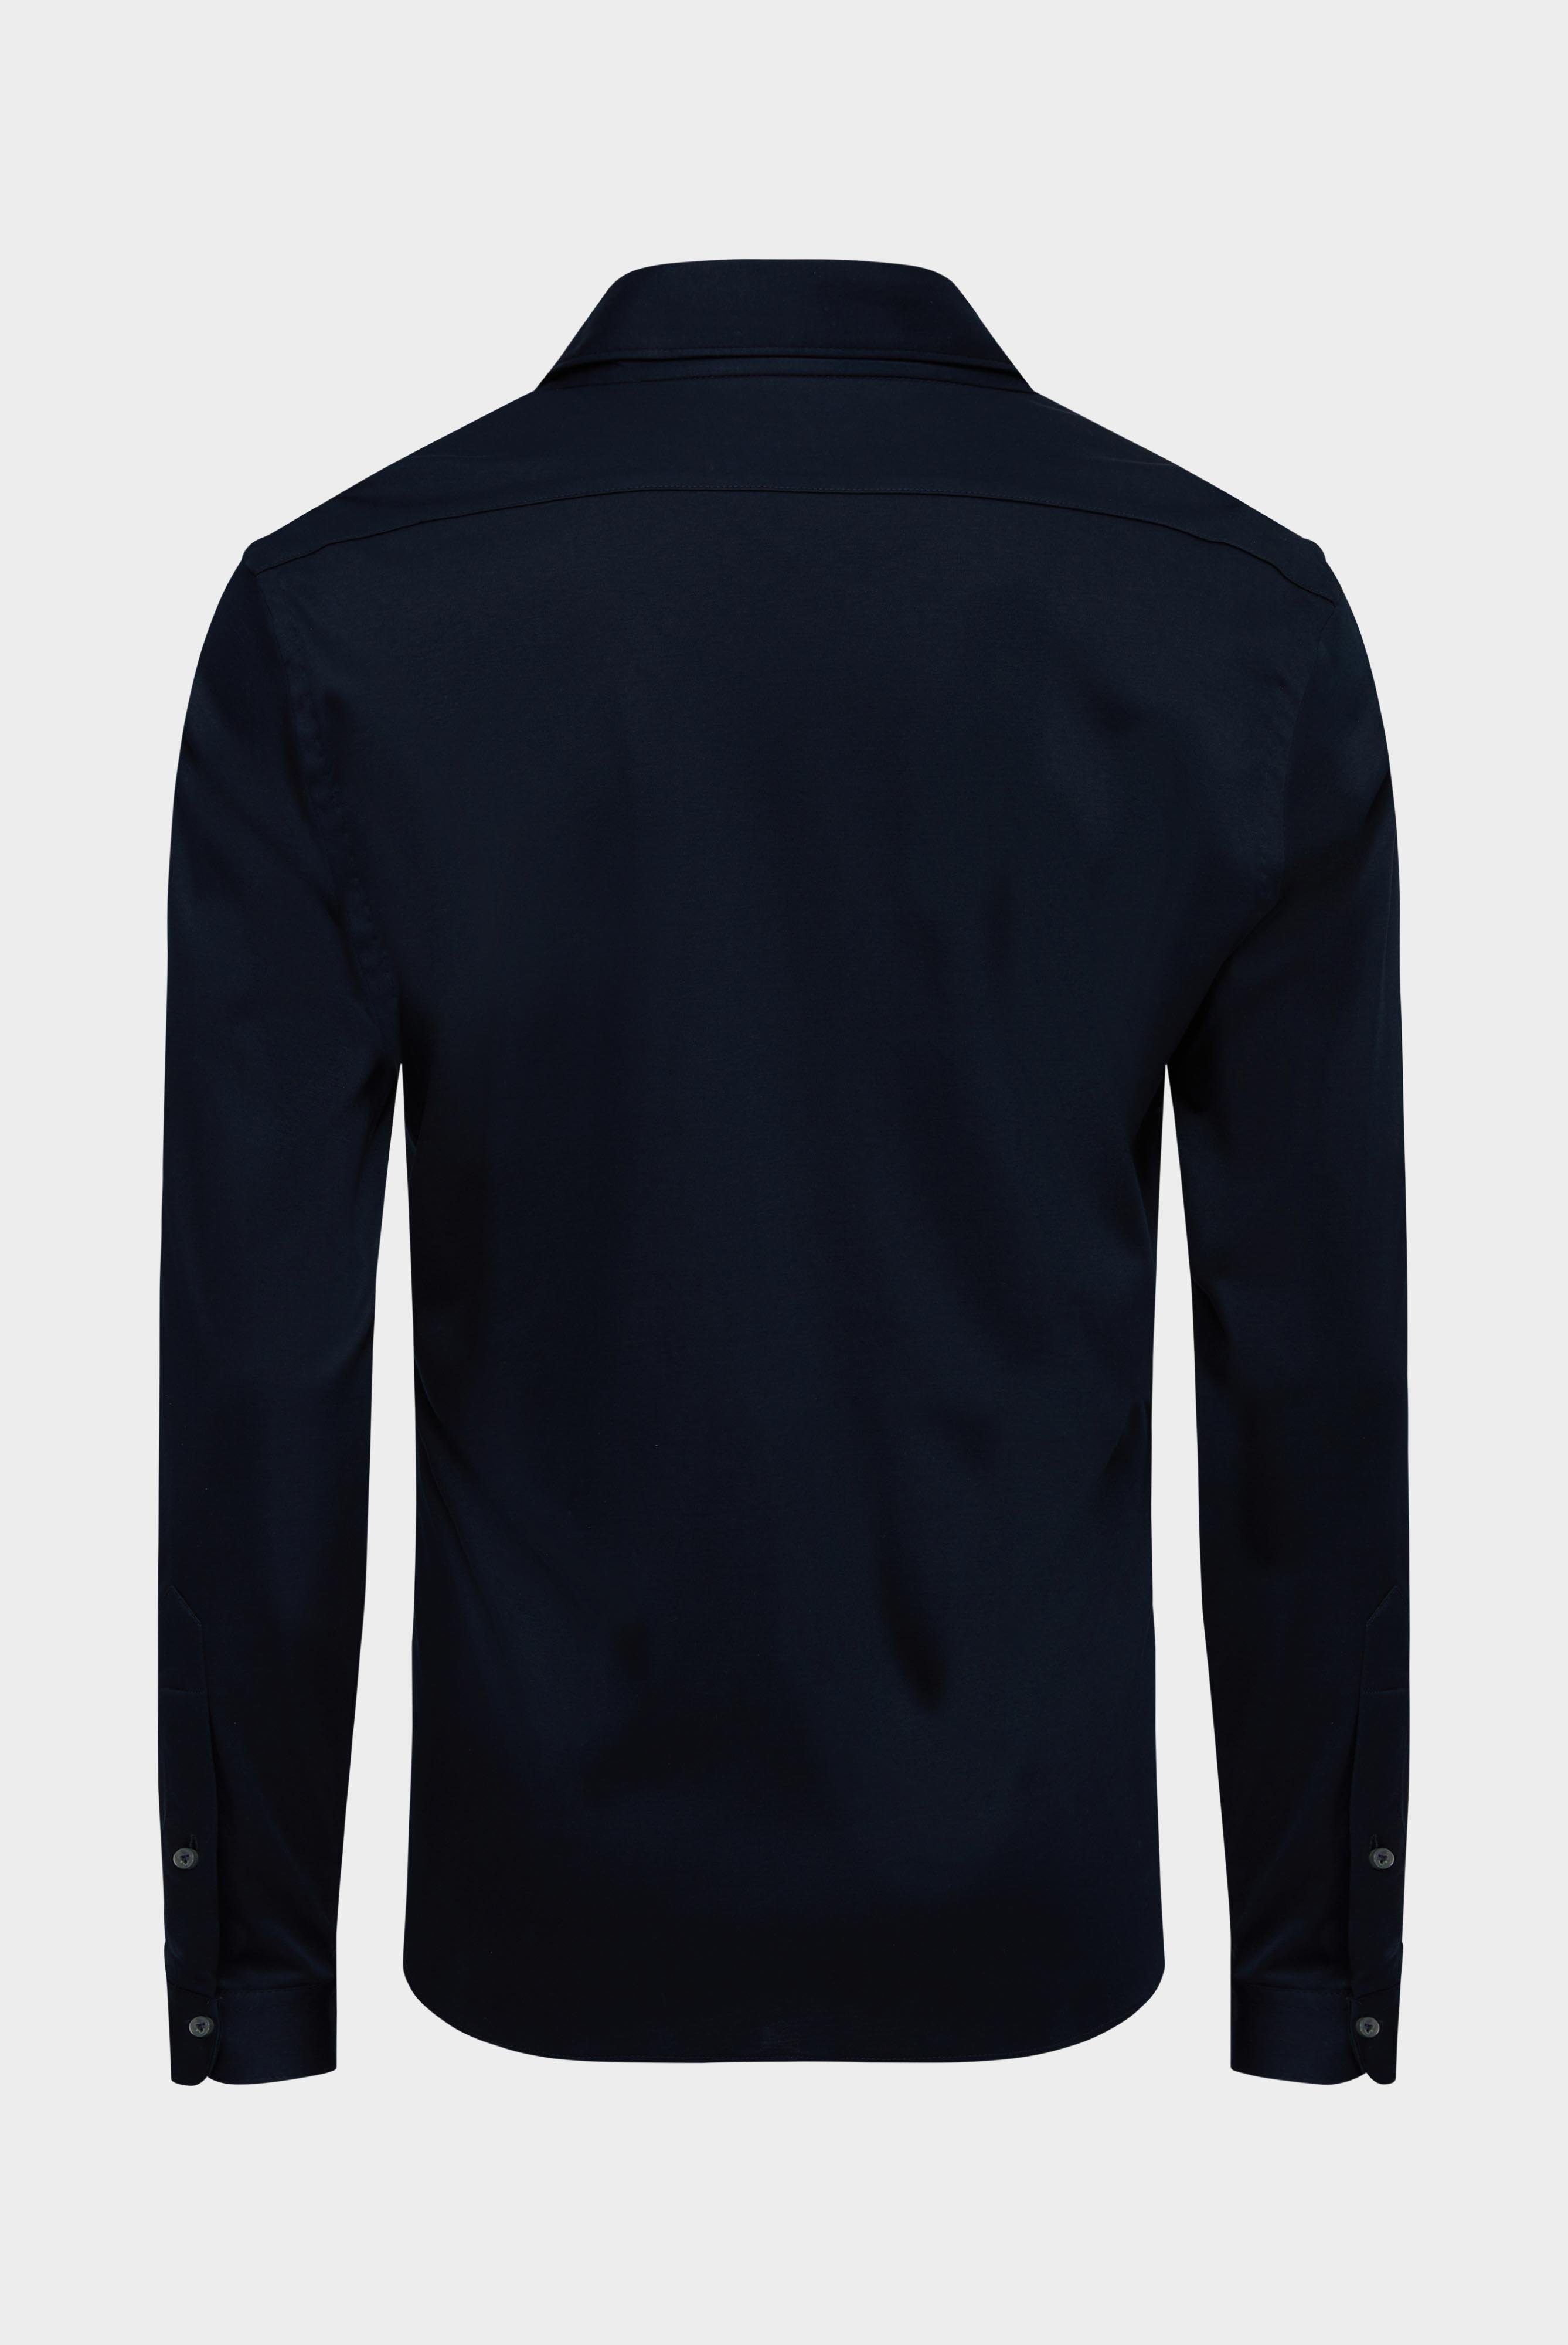 Bügelleichte Hemden+Jersey Hemd mit glänzender Optik Tailor Fit+20.1683.UC.180031.790.L